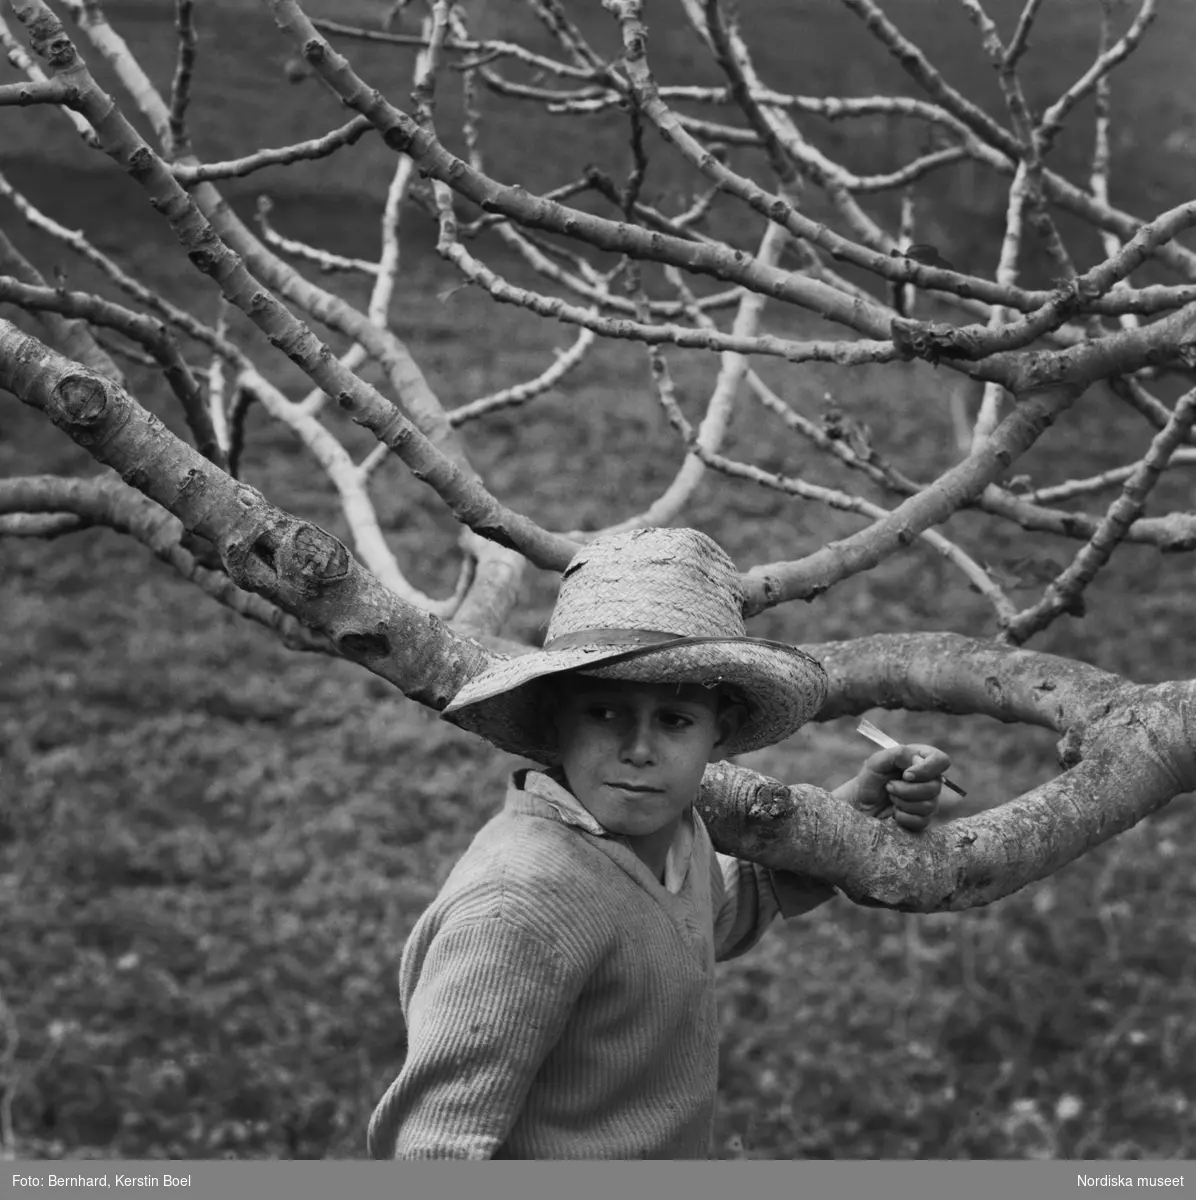 Pojke i bredbrättad stråhatt. La Gomera, Kanarieöarna, 1960